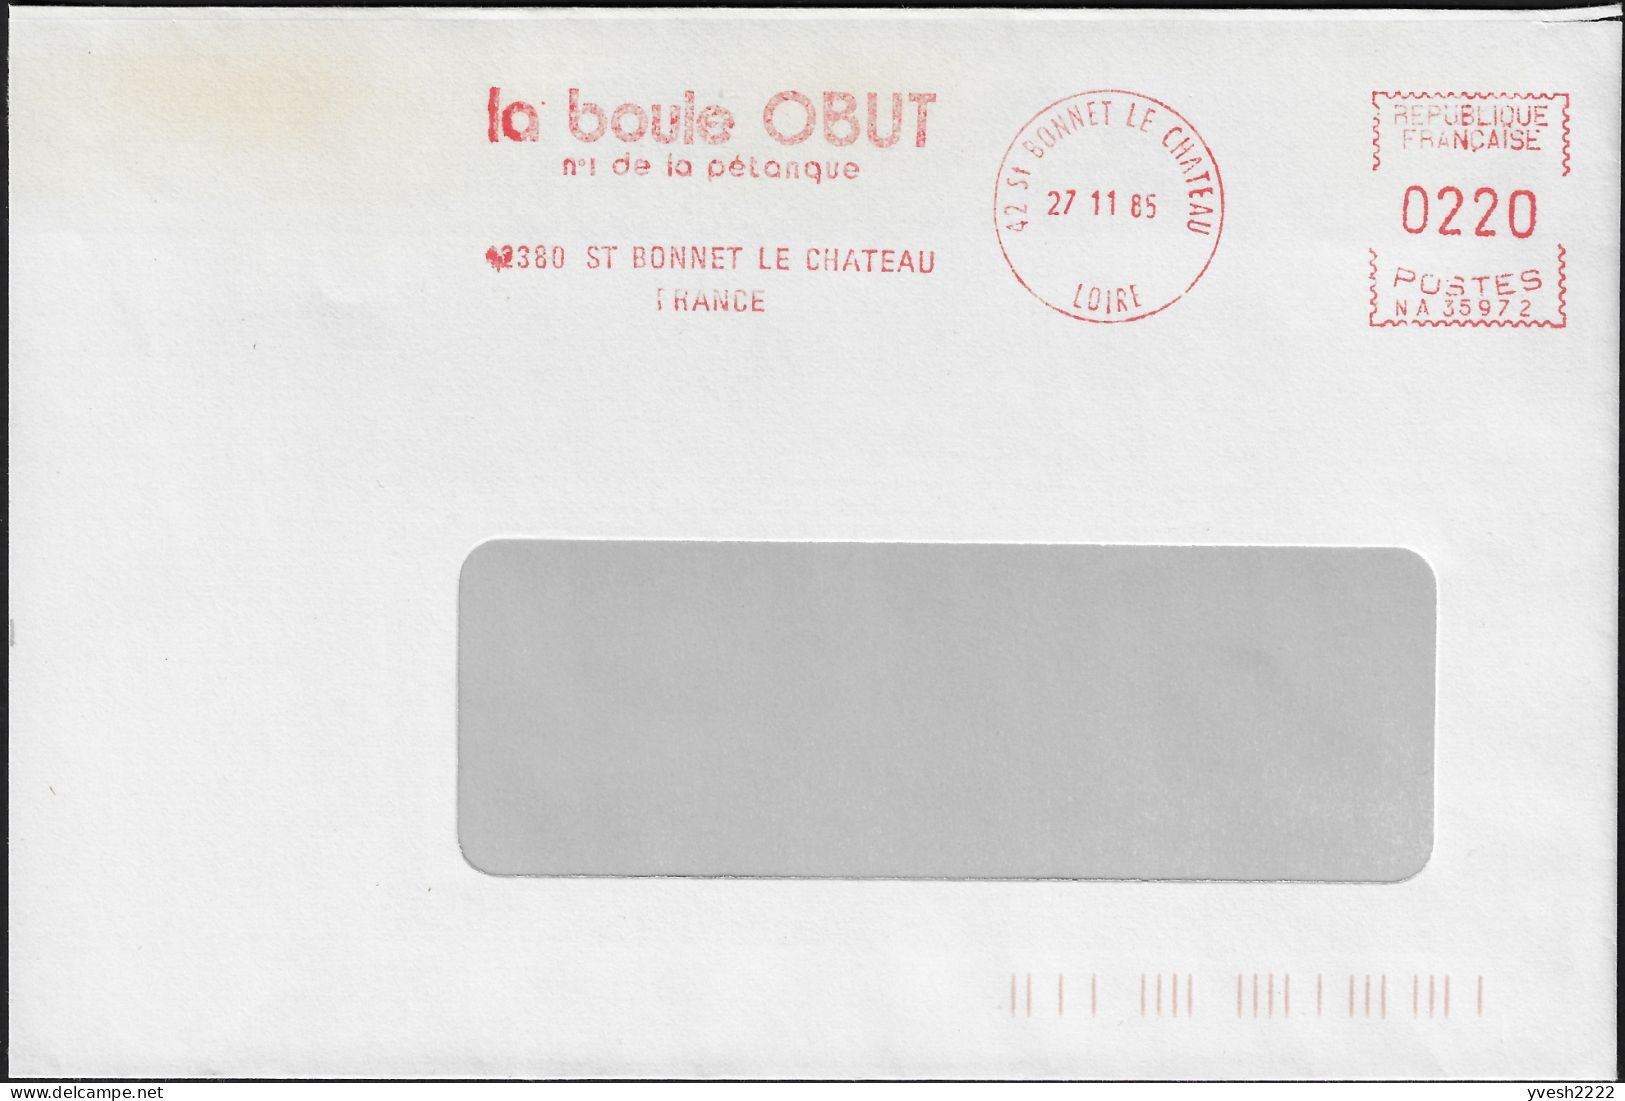 France 1985. Empreinte De Machine à Affranchir Obut. La Boule Obut, N° 1 De La Pétanque - Pétanque